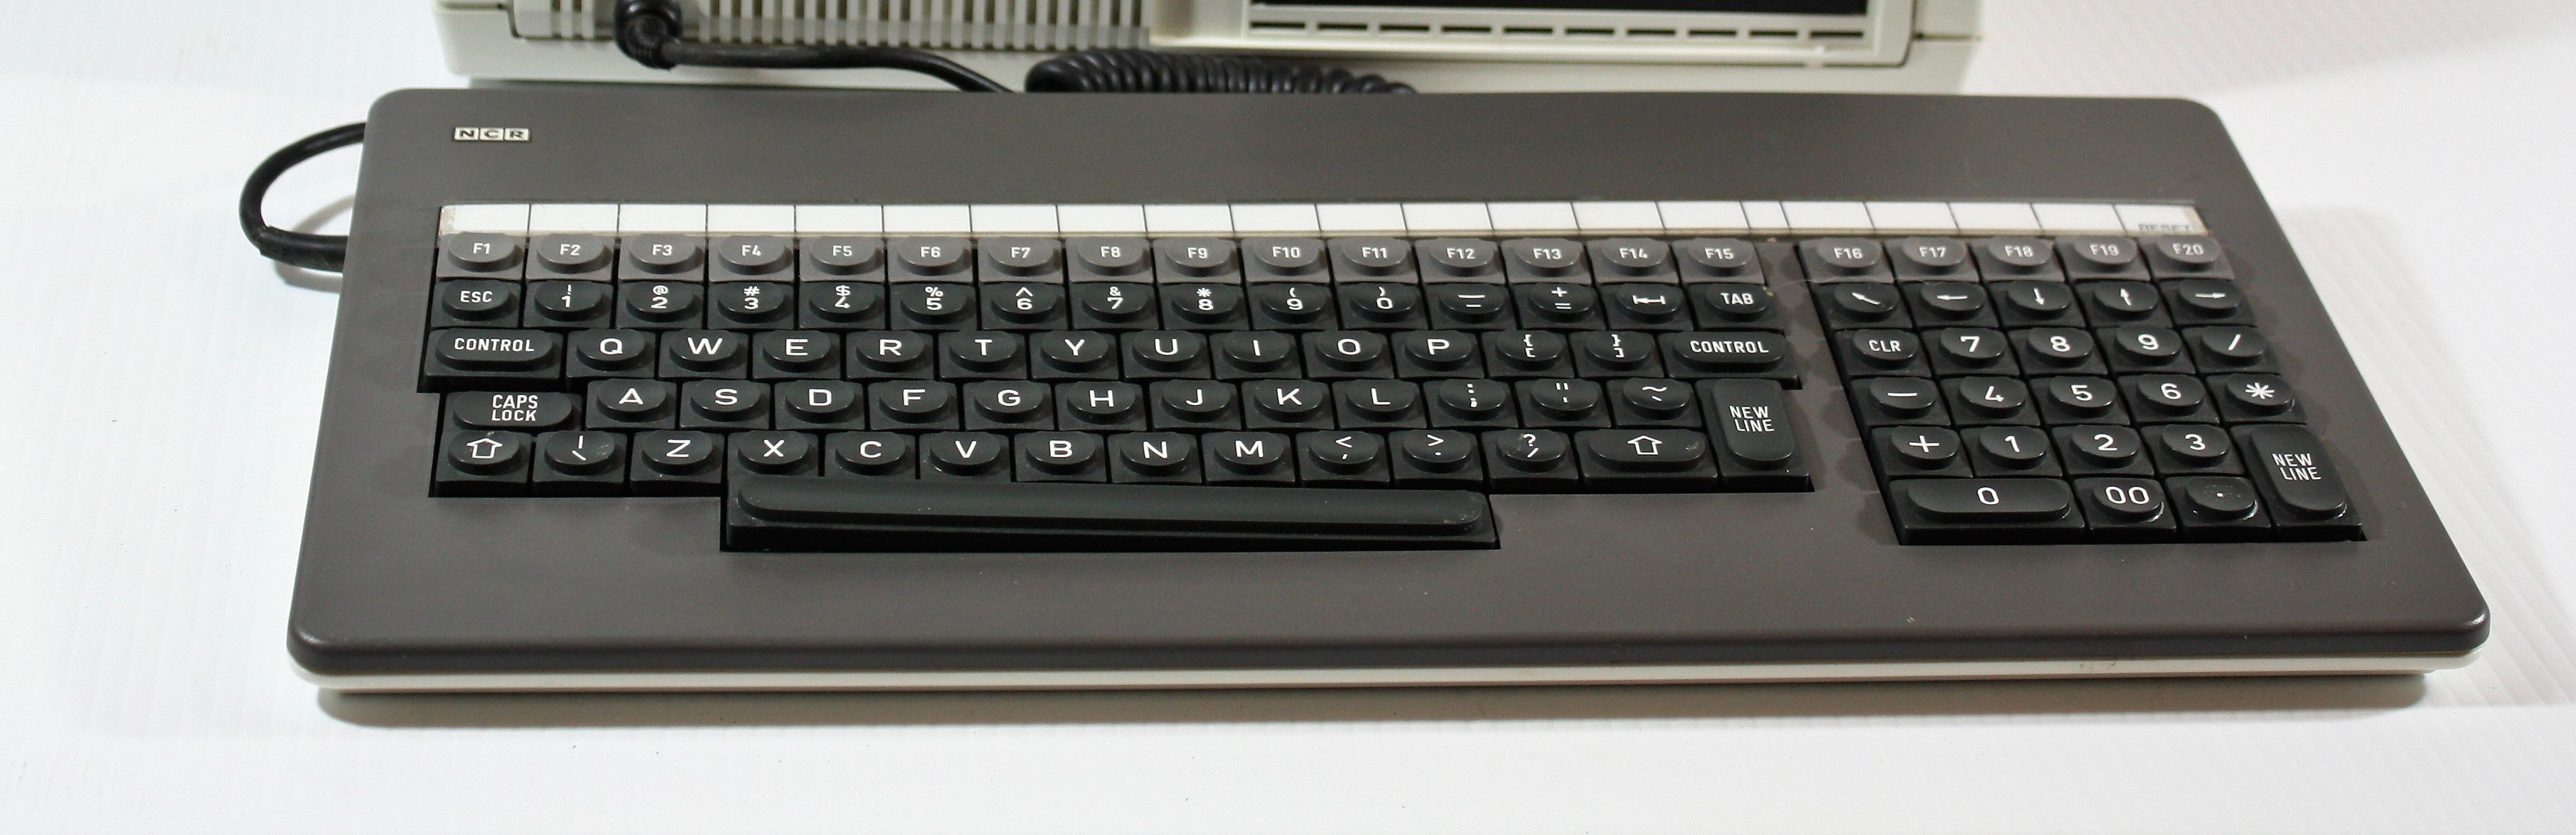 NCR keyboard